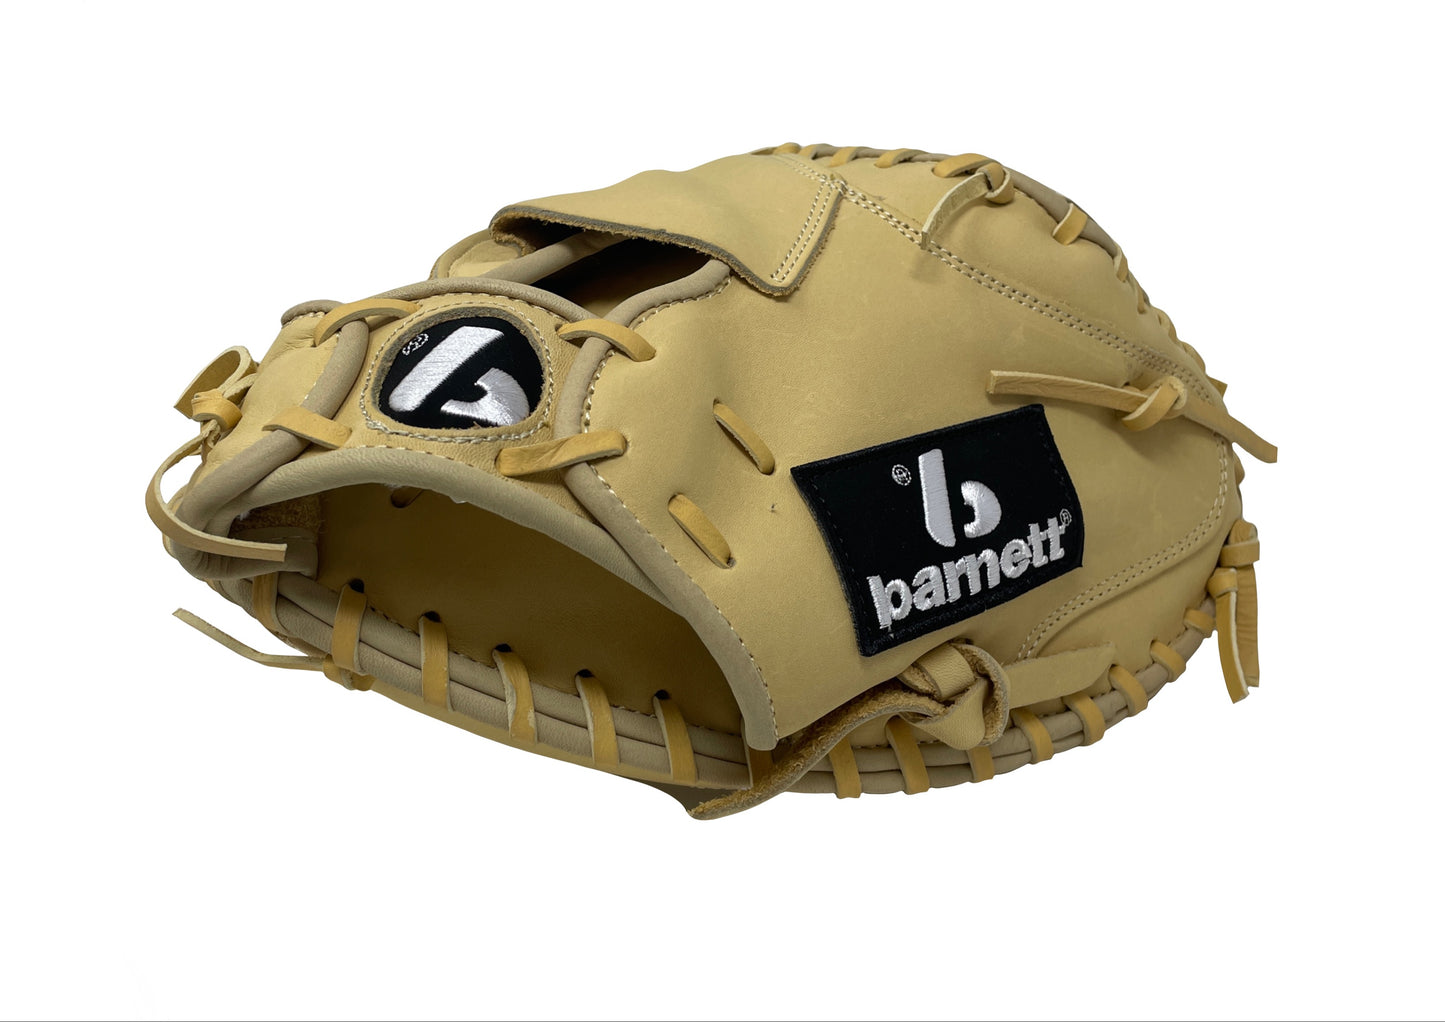 FL-203 gant de softball cuir haute qualité catcher, beige